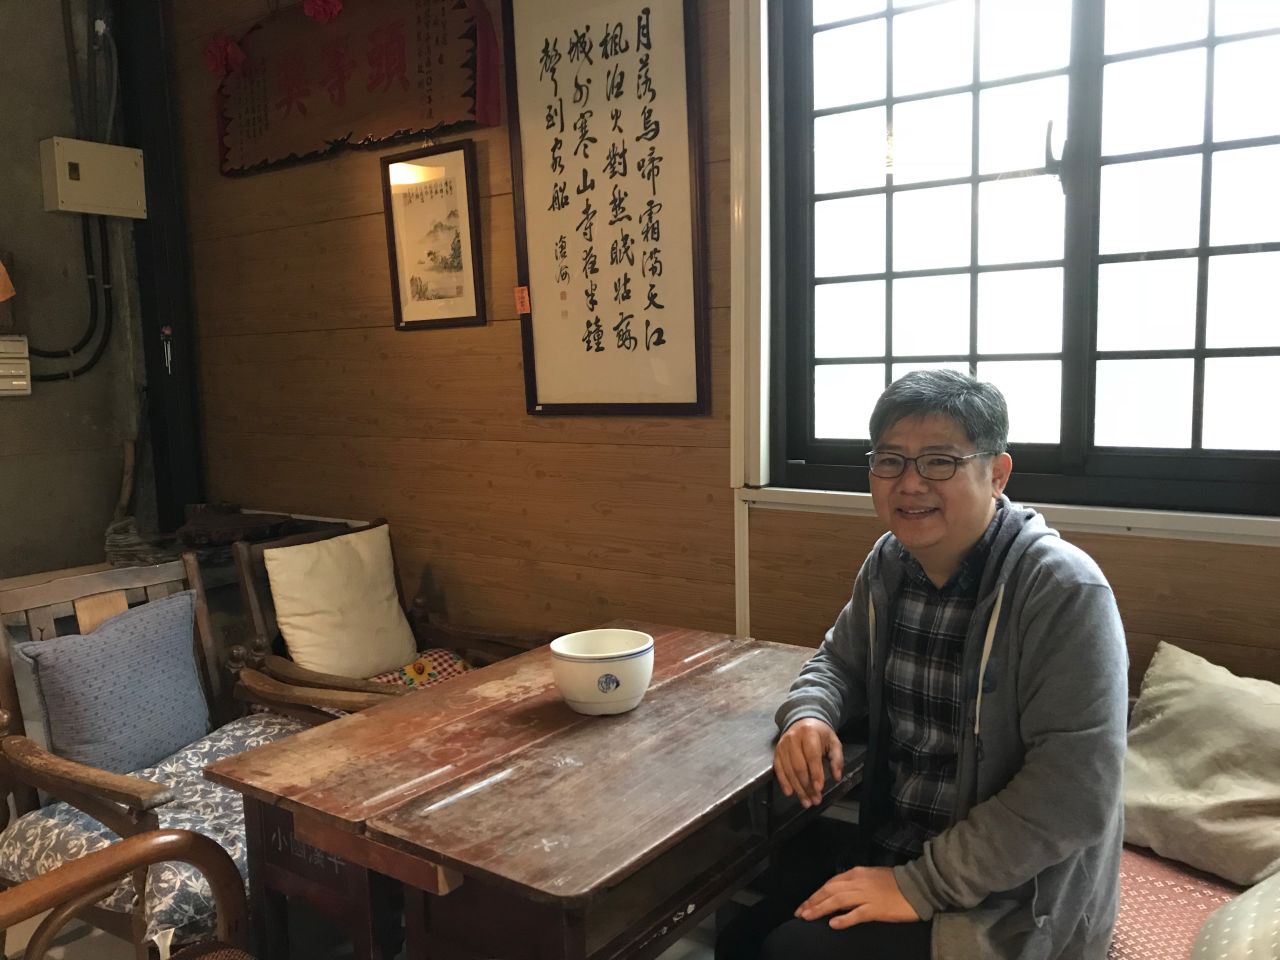 Martin Yen at his cafe, Six Door Tea.